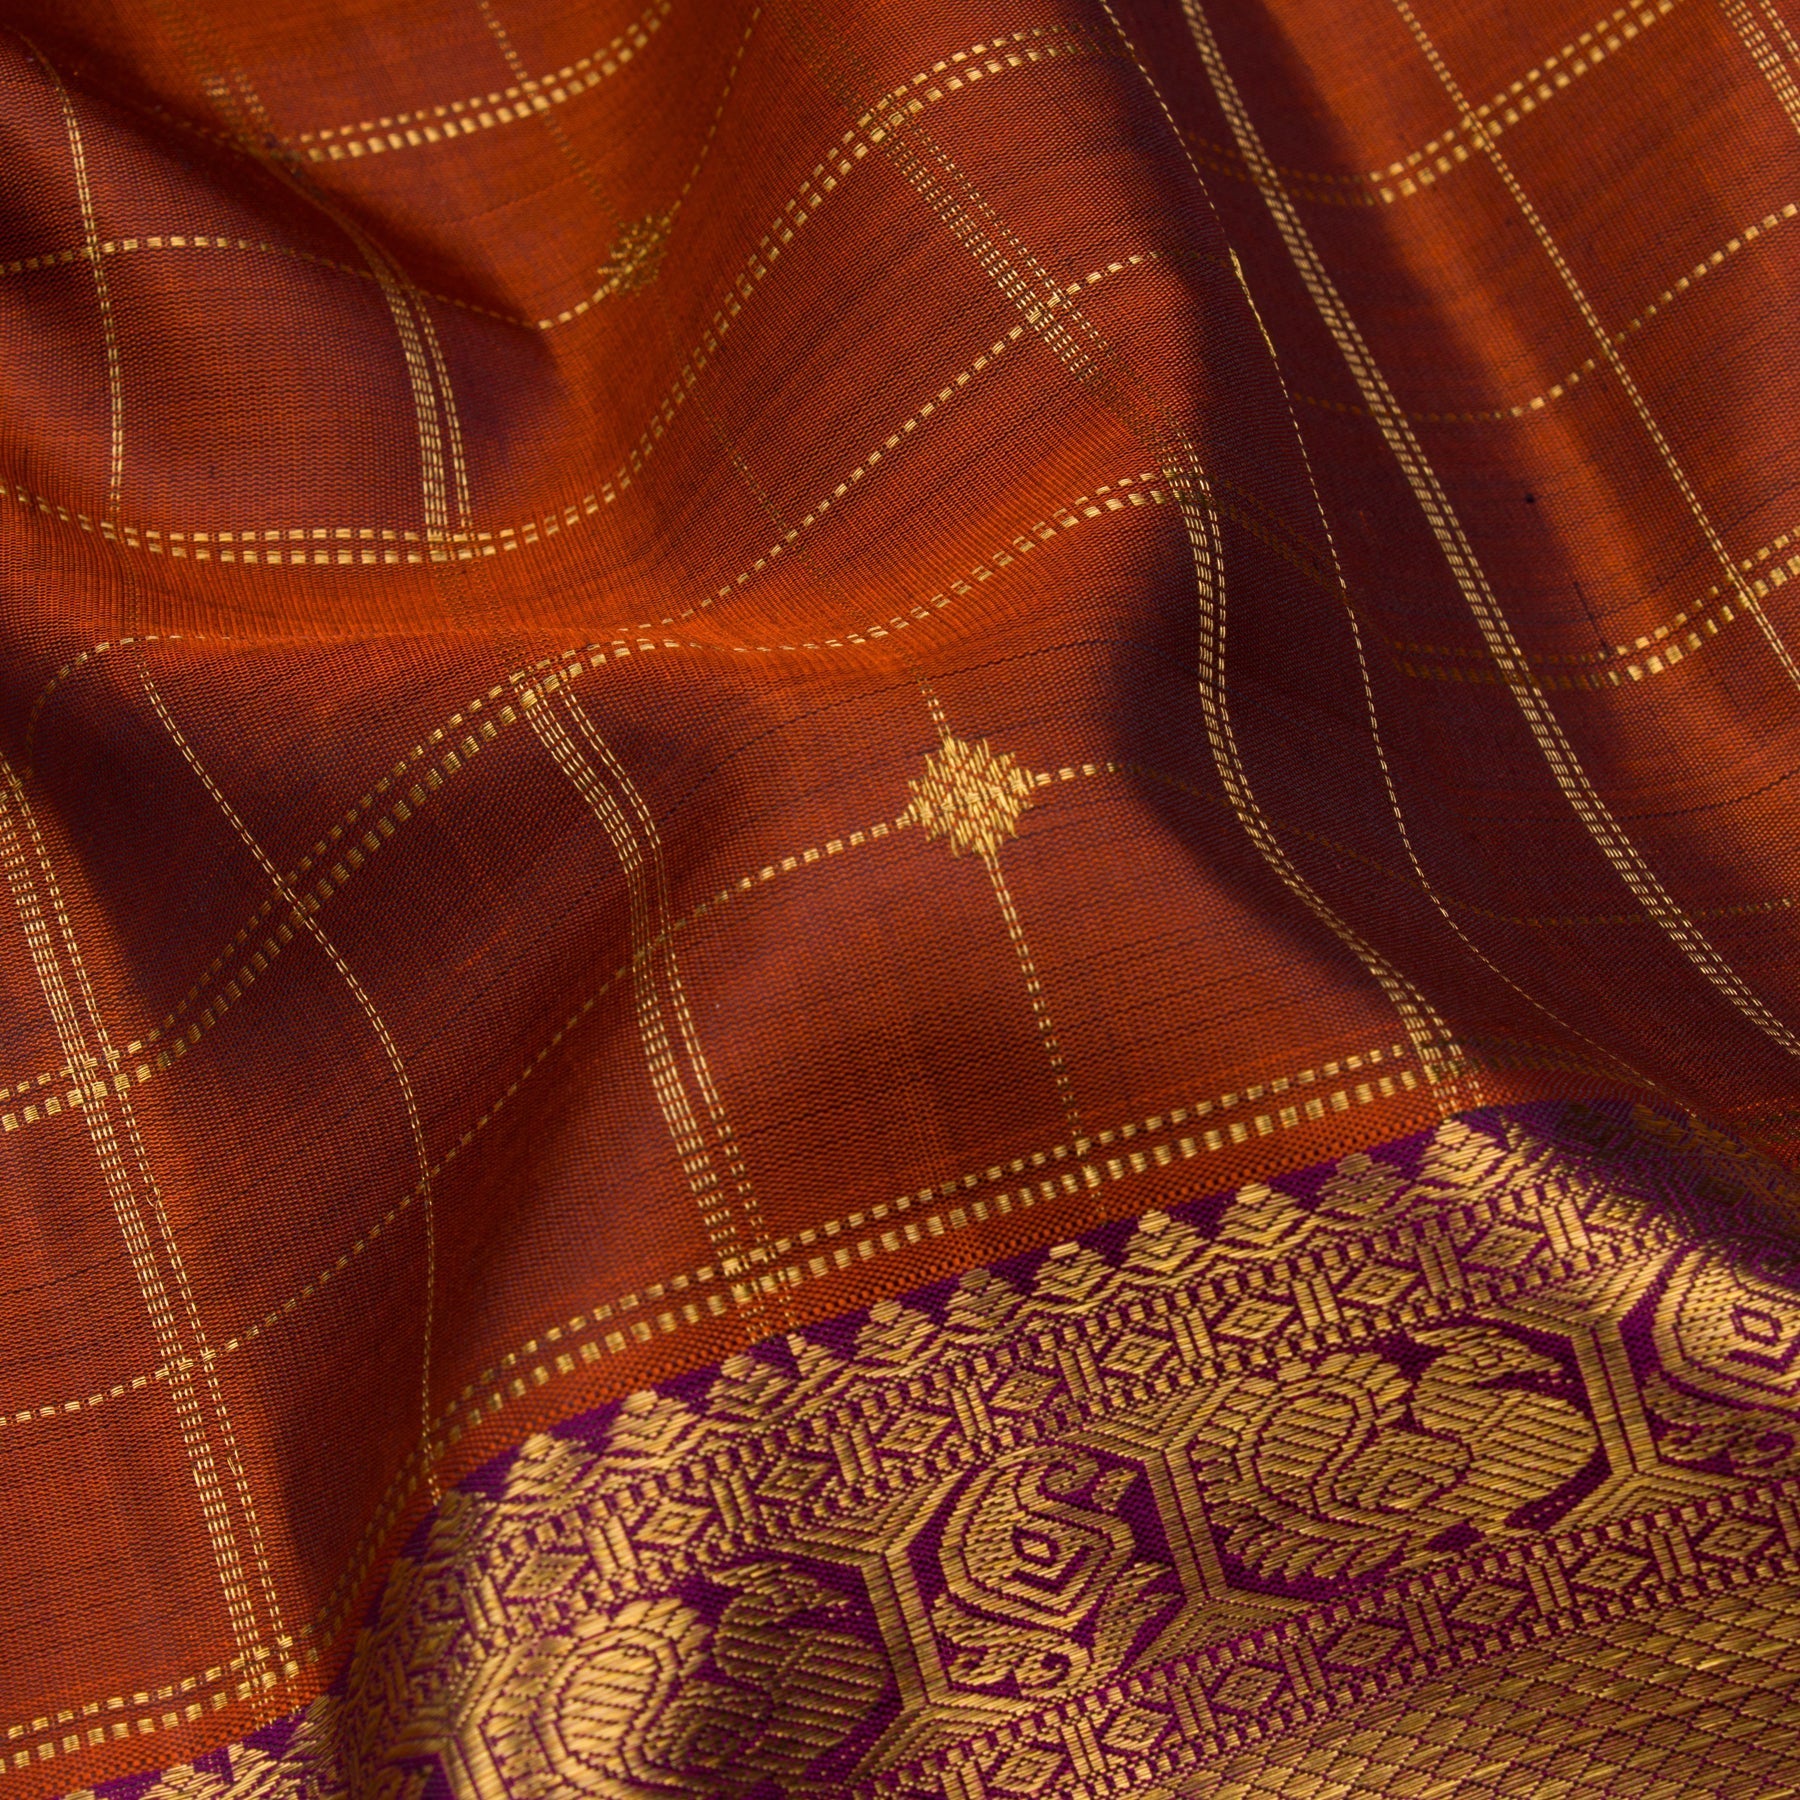 Kanakavalli Kanjivaram Silk Sari 23-599-HS001-03165 - Fabric View